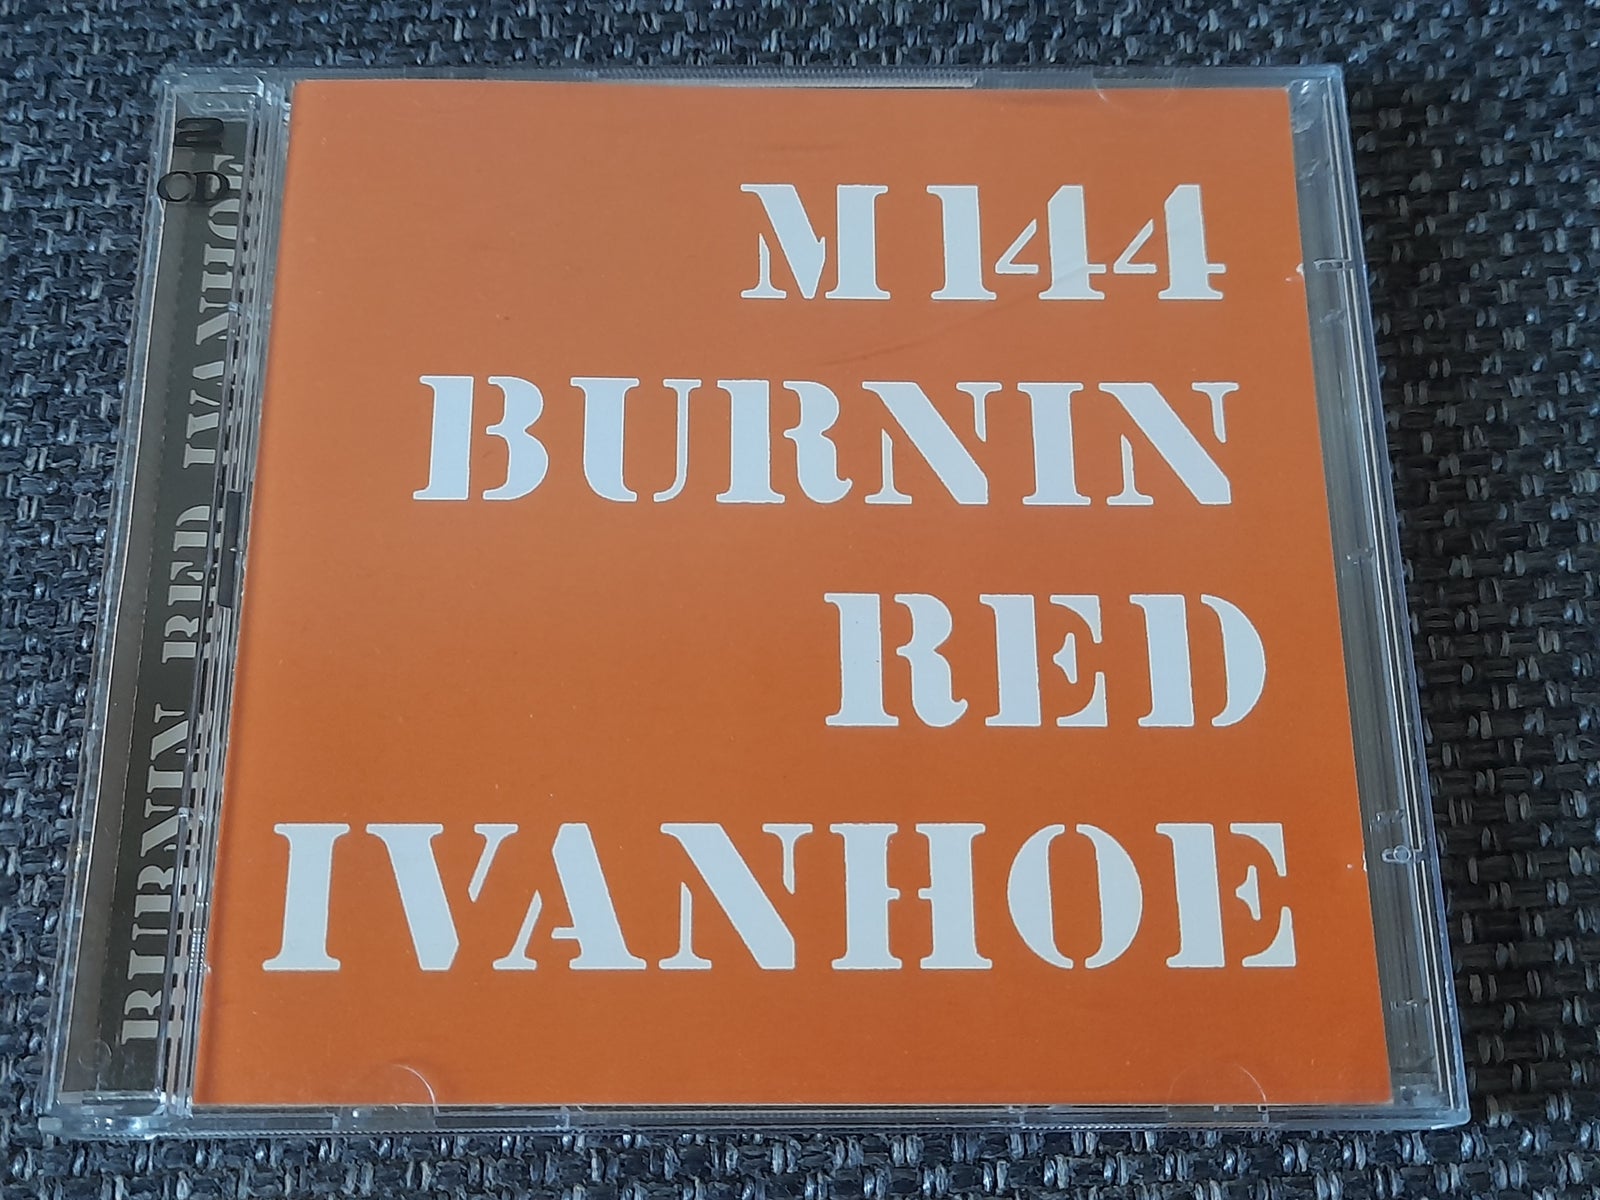 Burnin Red Ivanhoe - Topic 